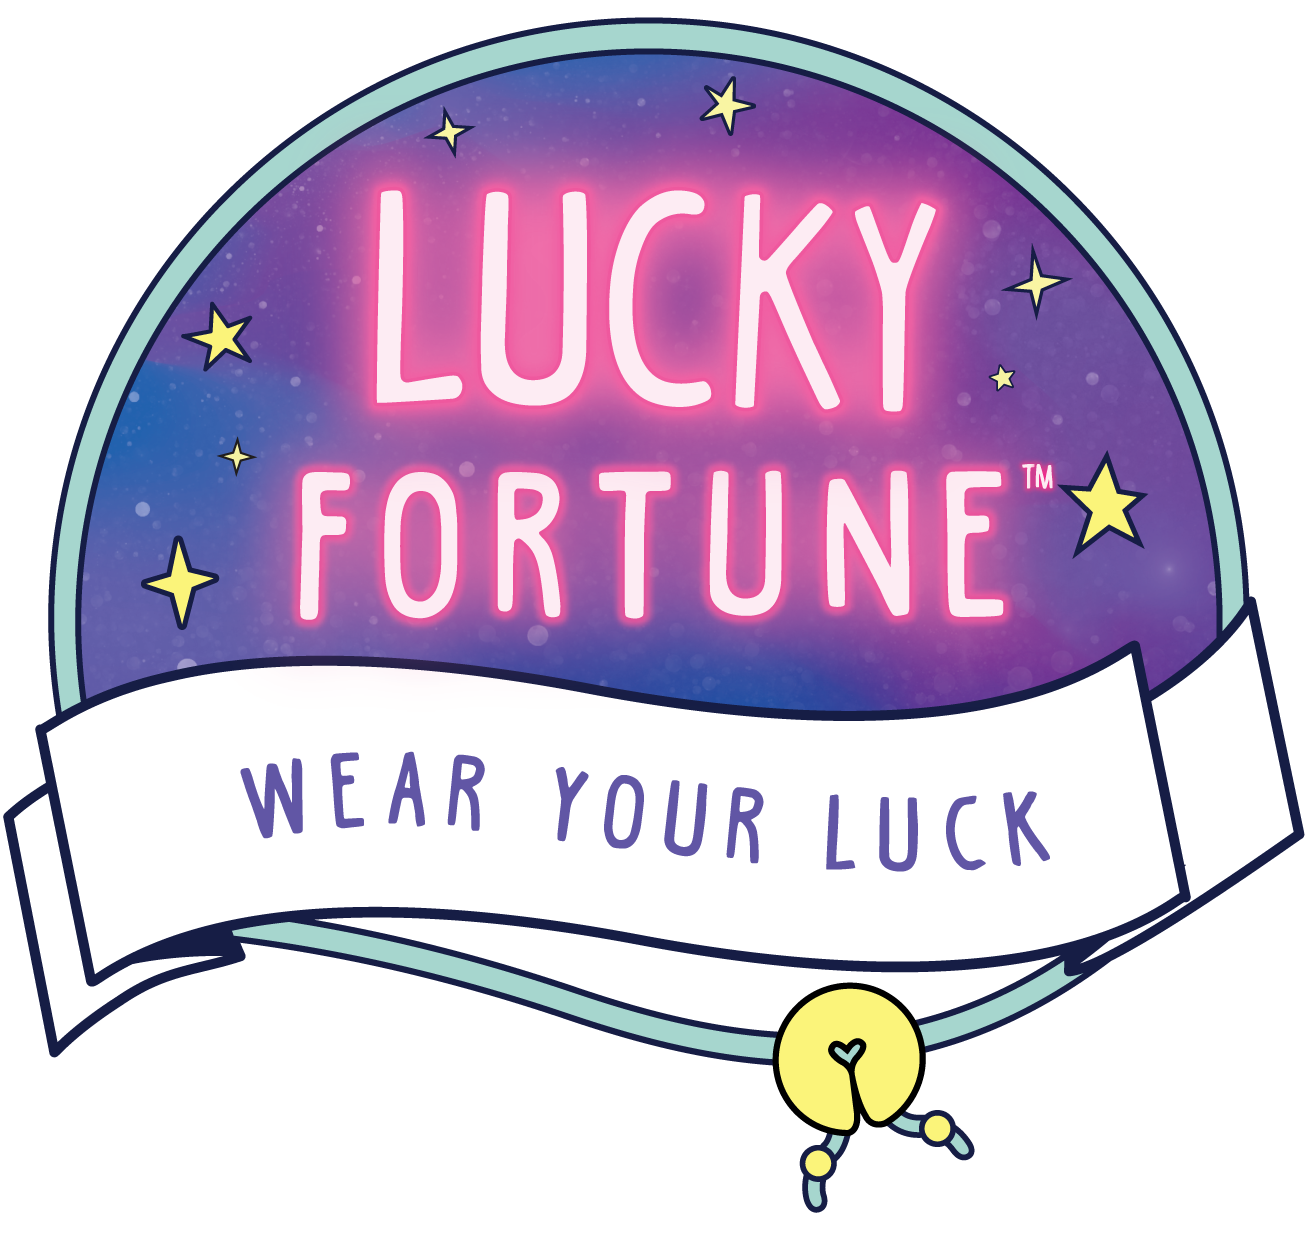 Llegaron las galletas de la fortuna más lindas con increíbles sorpresas  dentro! ¡Son Lucky Fortune! 